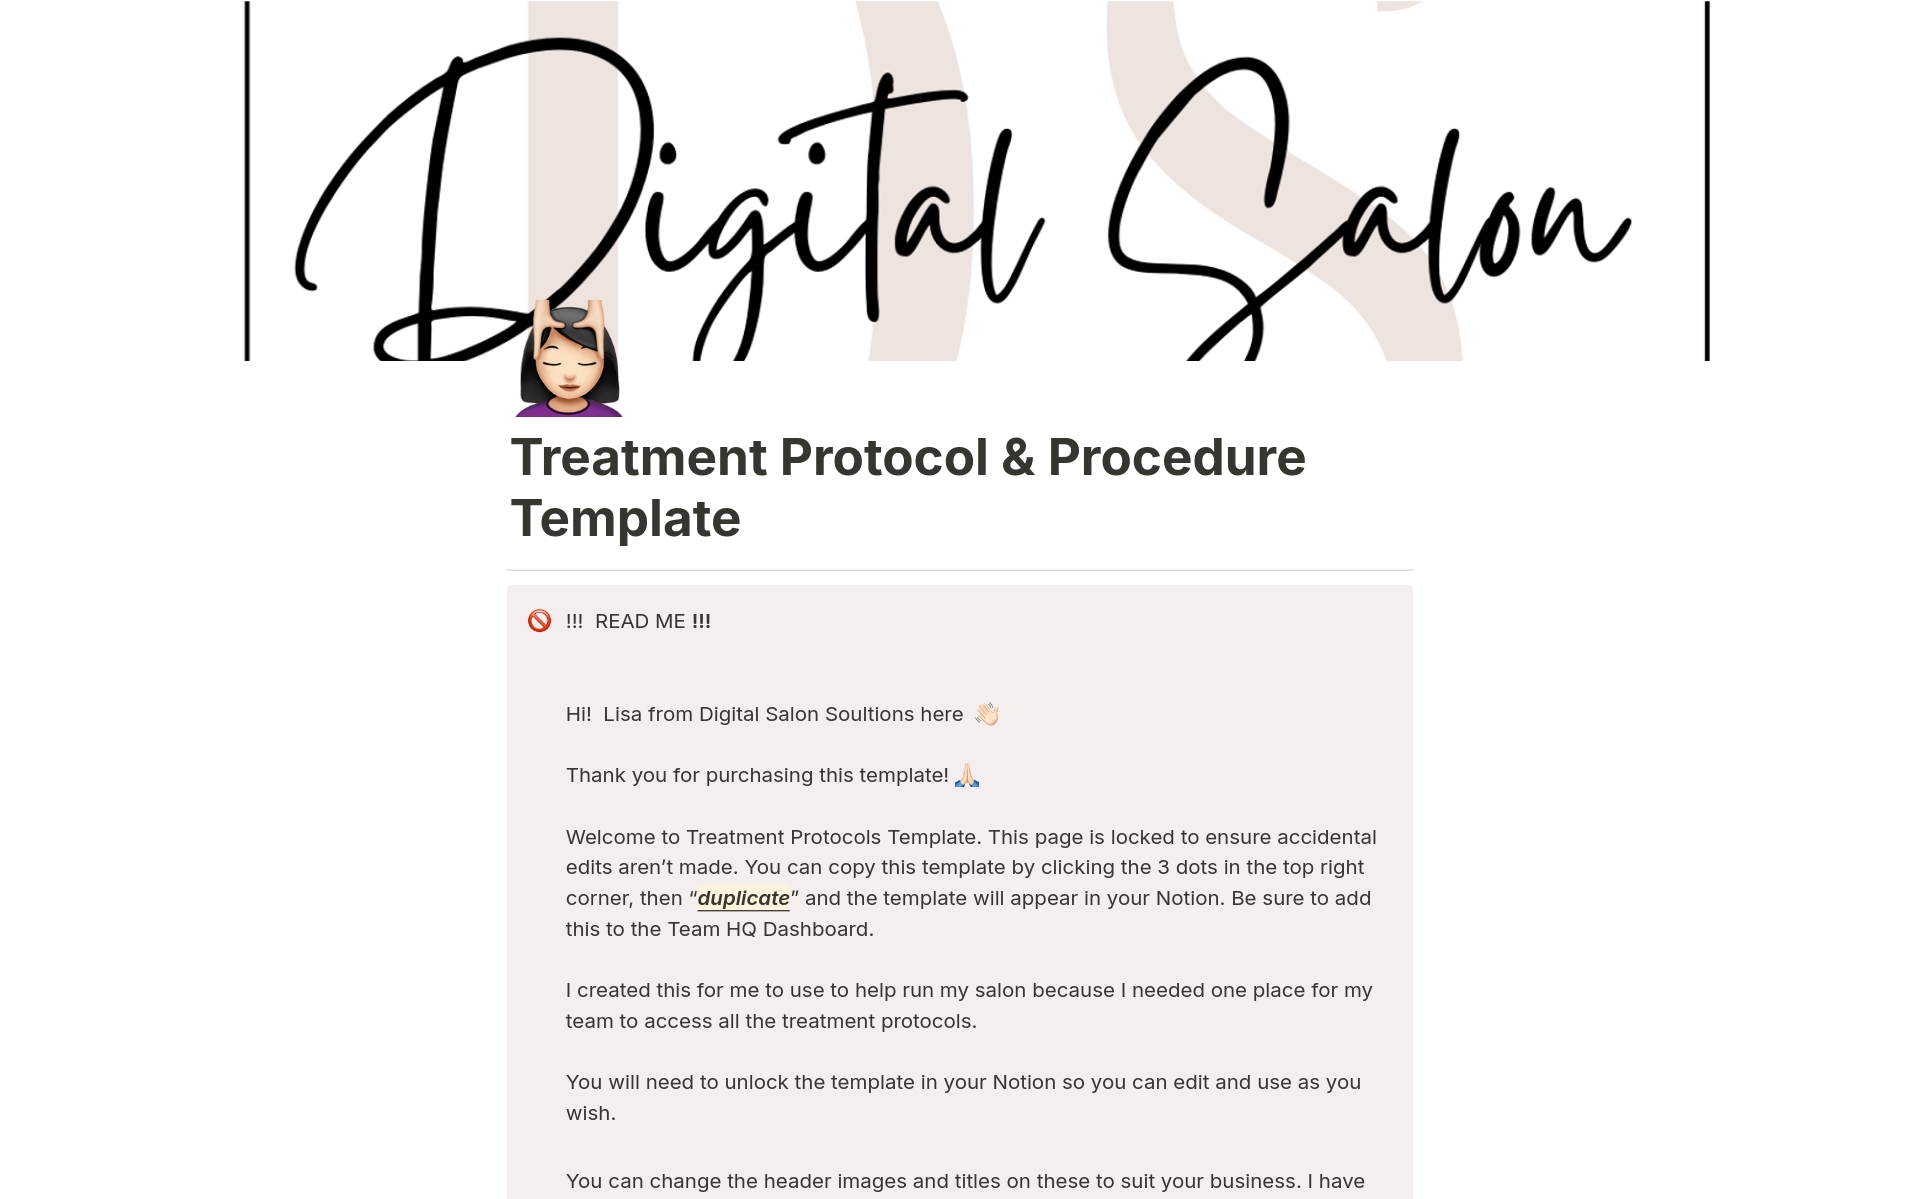 Uma prévia do modelo para Treatment Protocol & Procedure Template